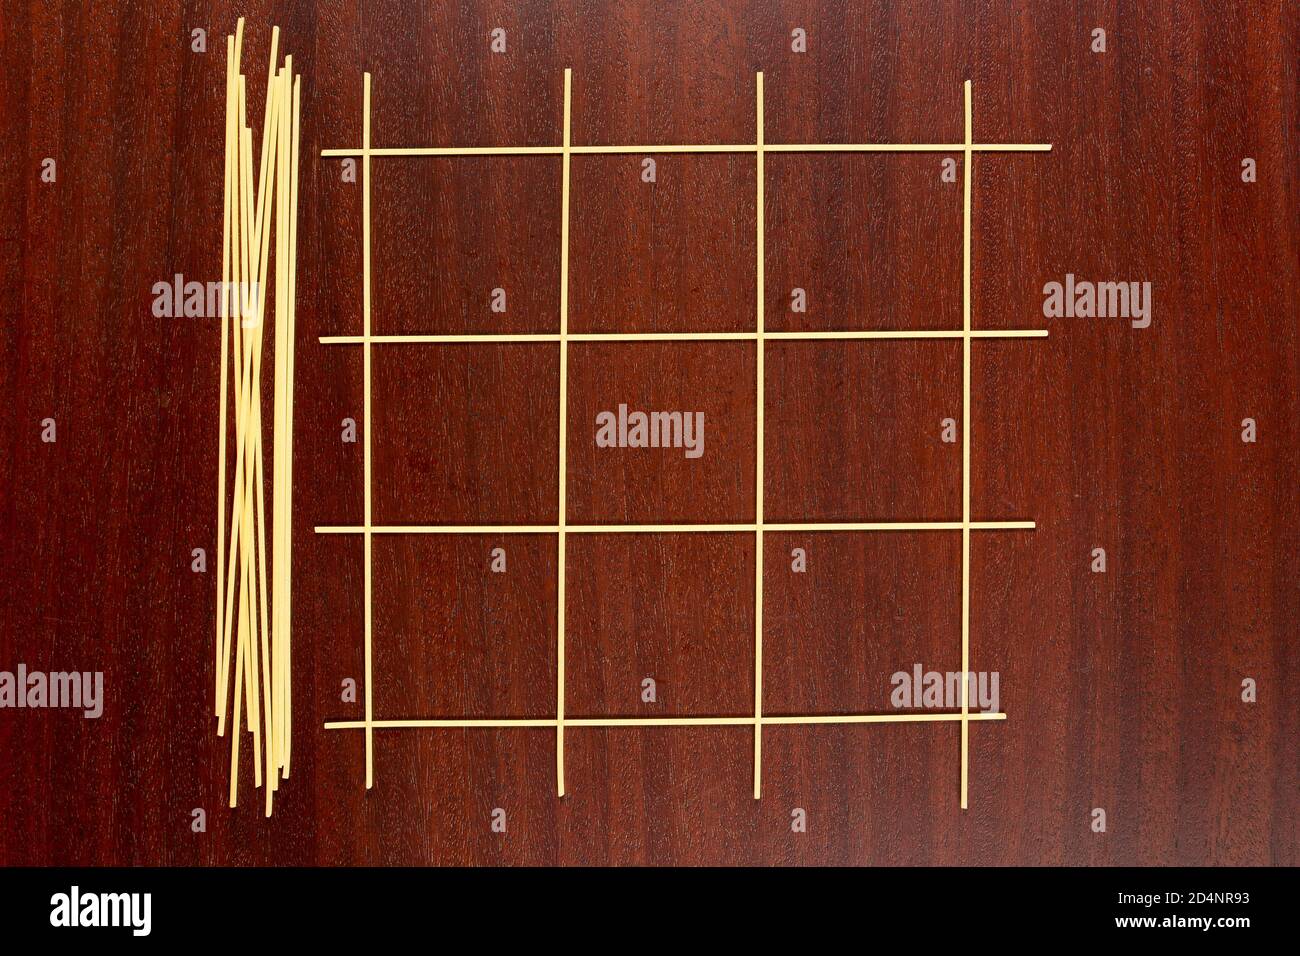 Italienische Pasta. Game Grid maade aus rohen Spaghetti für das Spielen Tic Tac Toe Spiel oder XS und OS. Die trockenen Capellini auf einem braunen Holztisch. Stockfoto